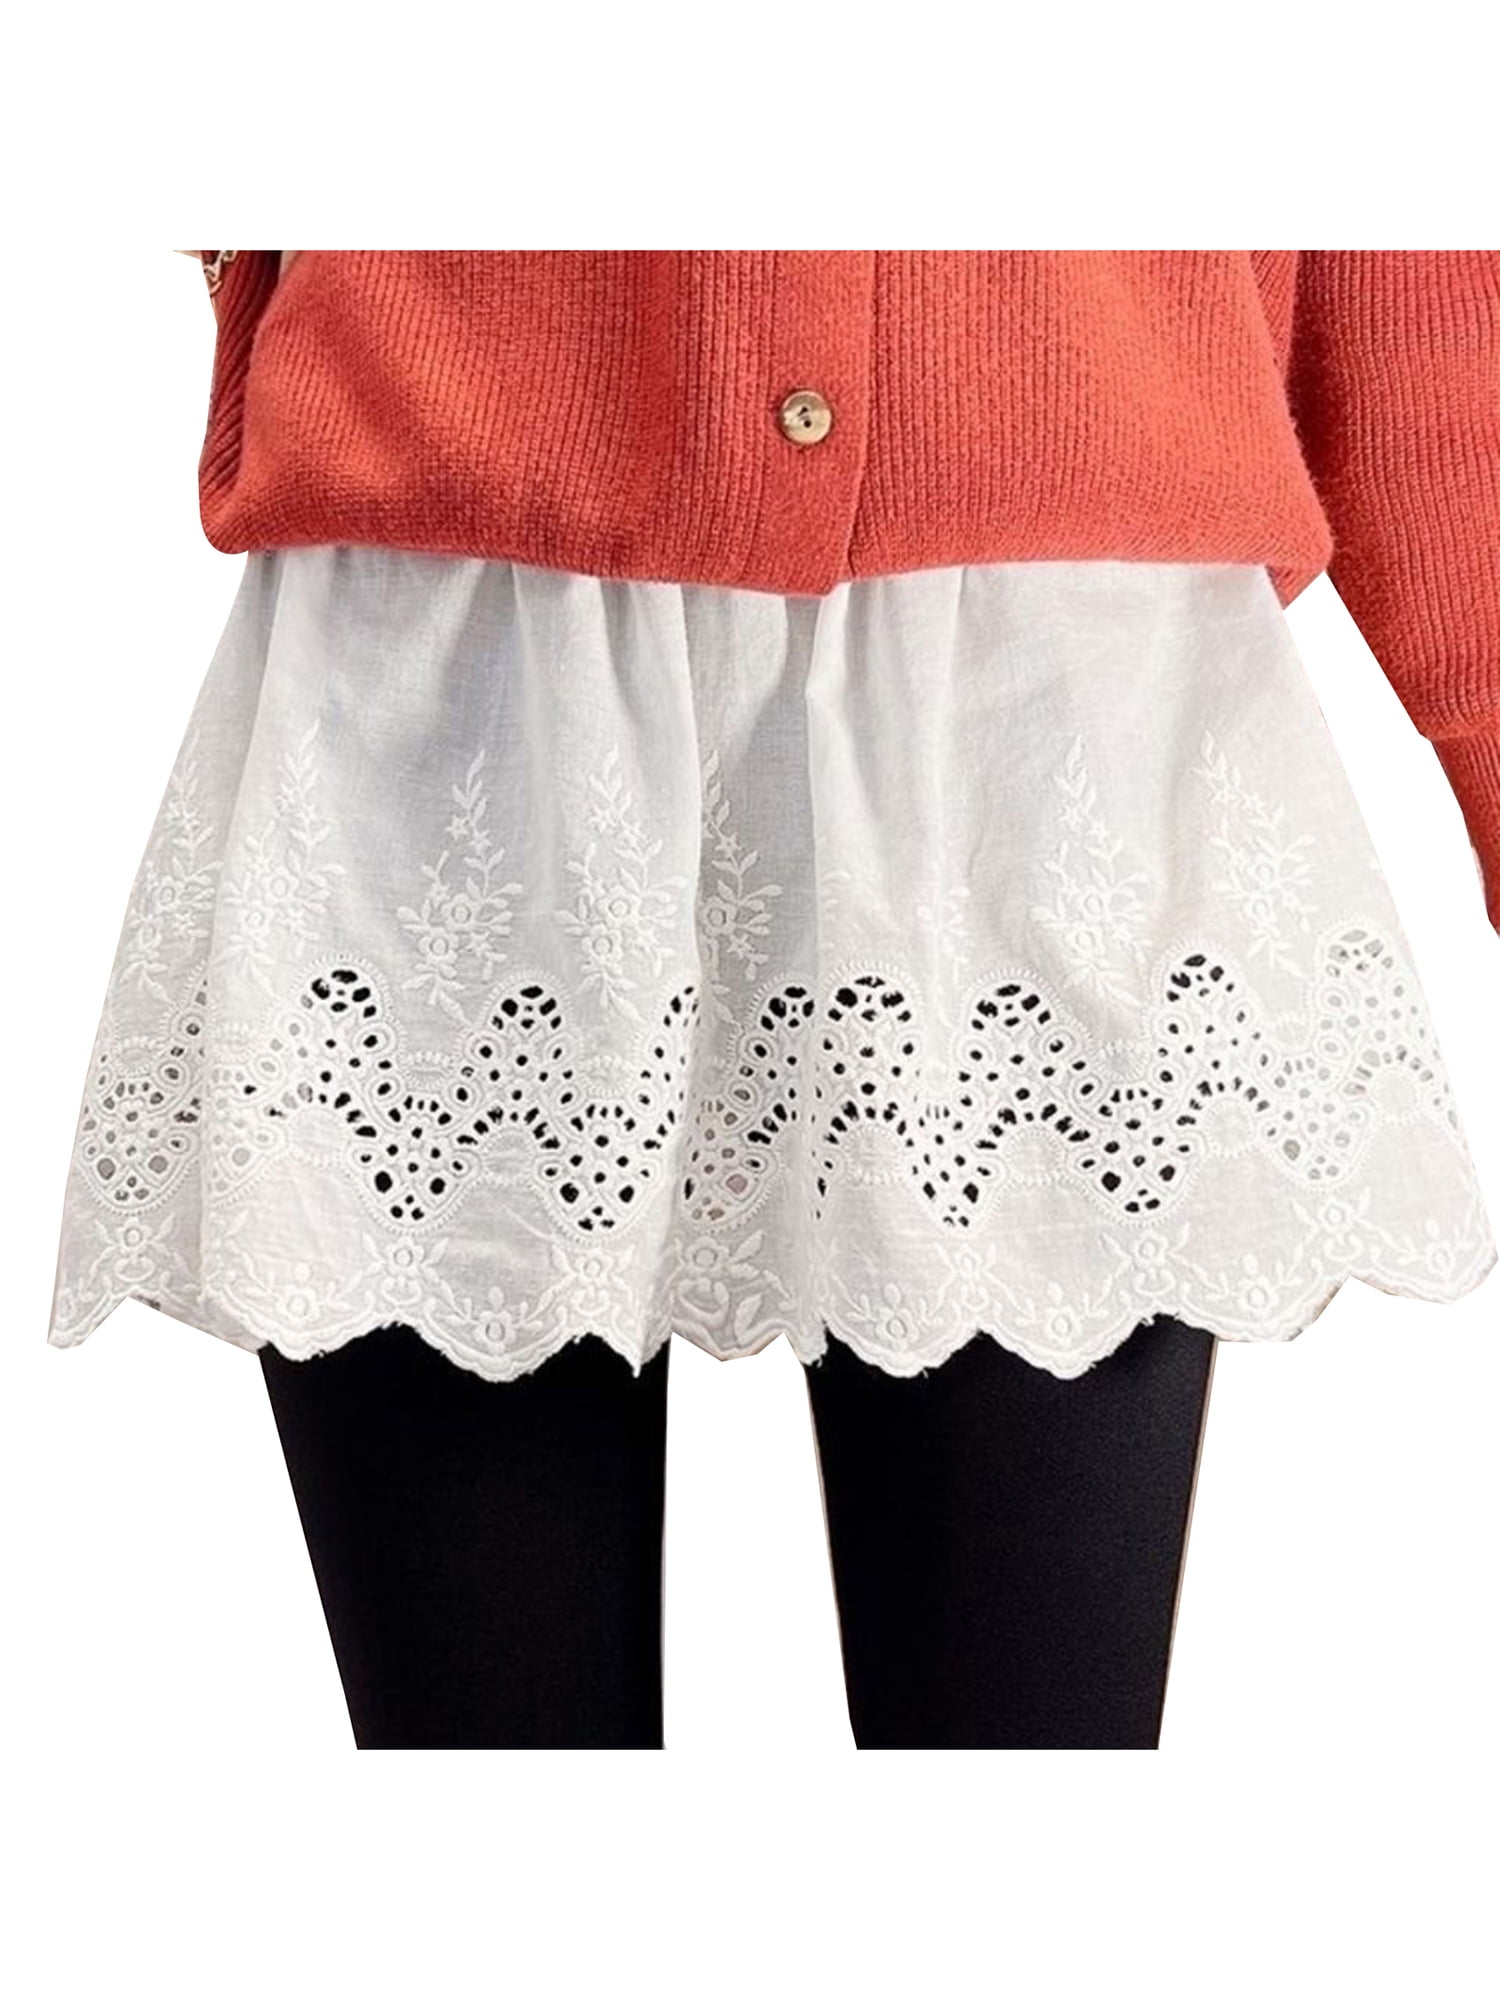 Mini Skirt Shirt Extenders for Legging Plus Size,Tiered Skirt Short Half Slip Skirt Stripe Extender with Lace Underskirt 